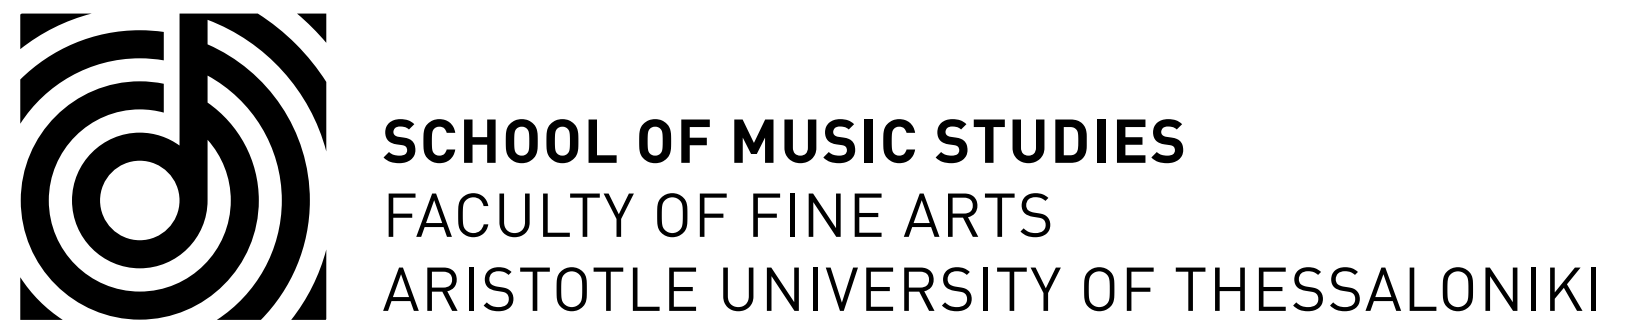 亚里士多德大学音乐学院  ...